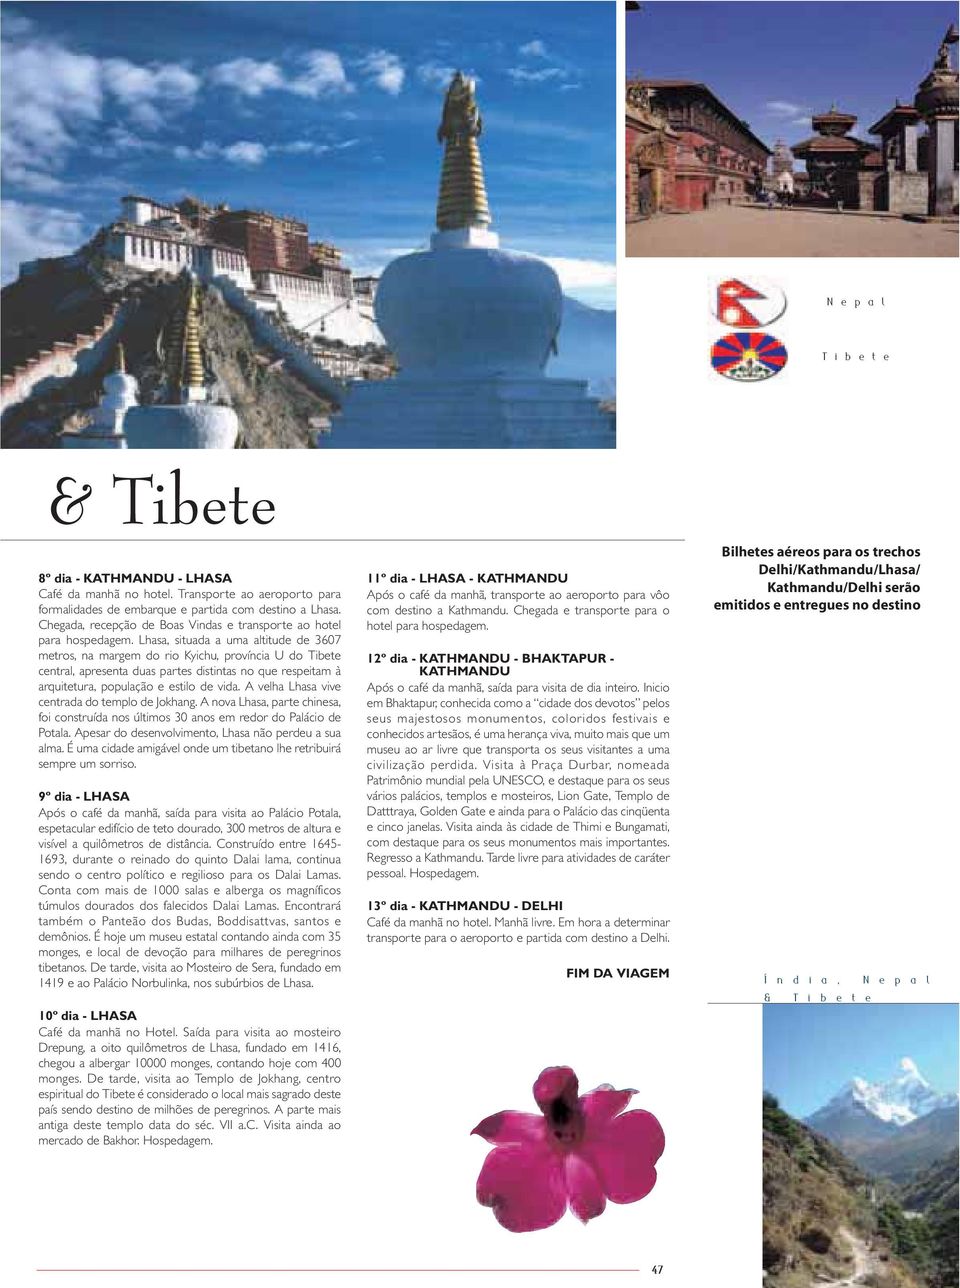 Lhasa, situada a uma altitude de 3607 metros, na margem do rio Kyichu, província U do Tibete central, apresenta duas partes distintas no que respeitam à arquitetura, população e estilo de vida.